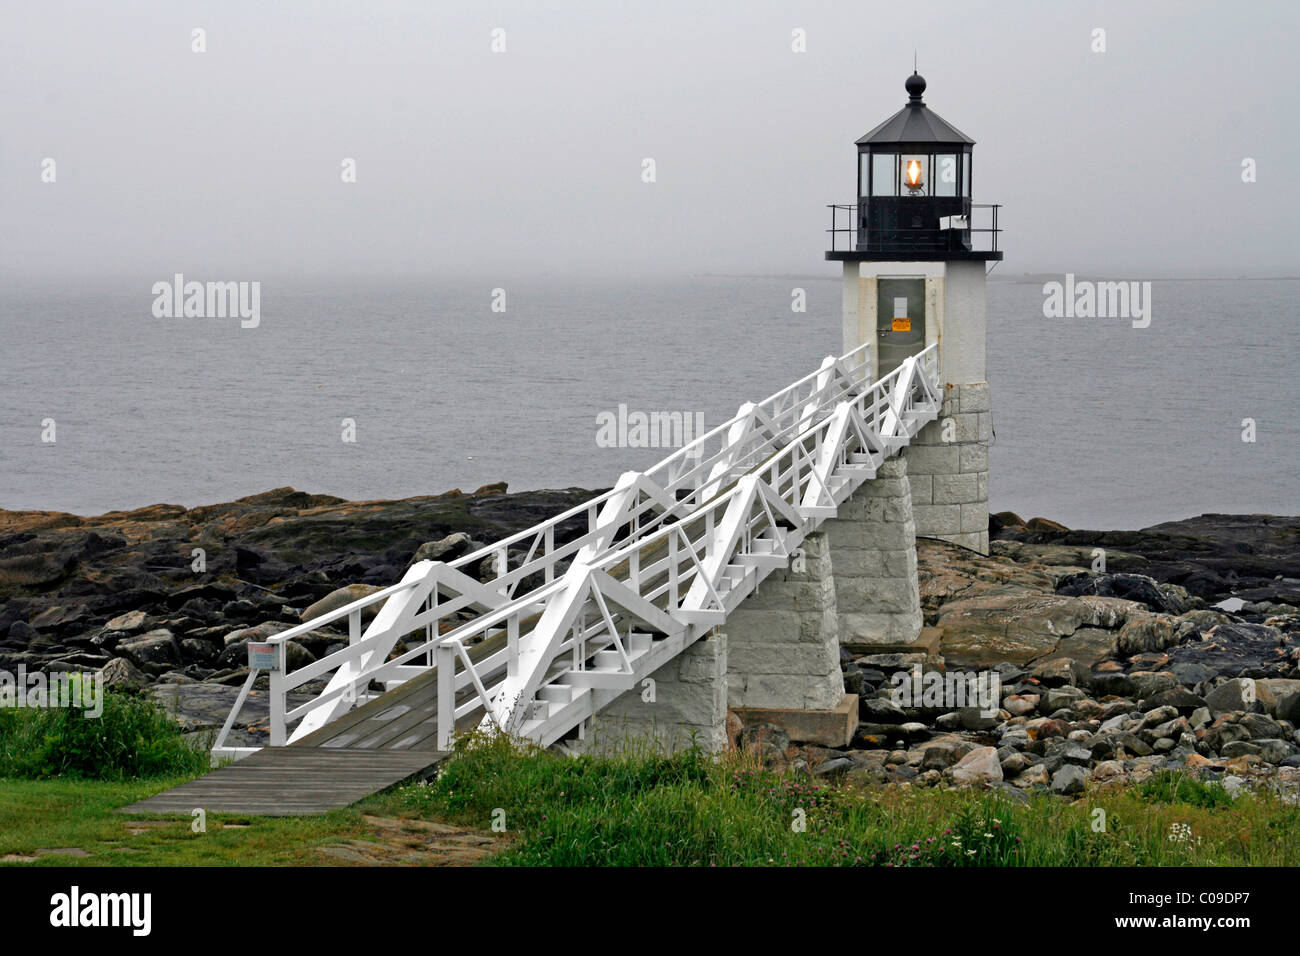 Marshall Point Lighthouse, Port Clyde, villaggio di pescatori, Oceano Atlantico, costa del Maine, New England, STATI UNITI D'AMERICA Foto Stock